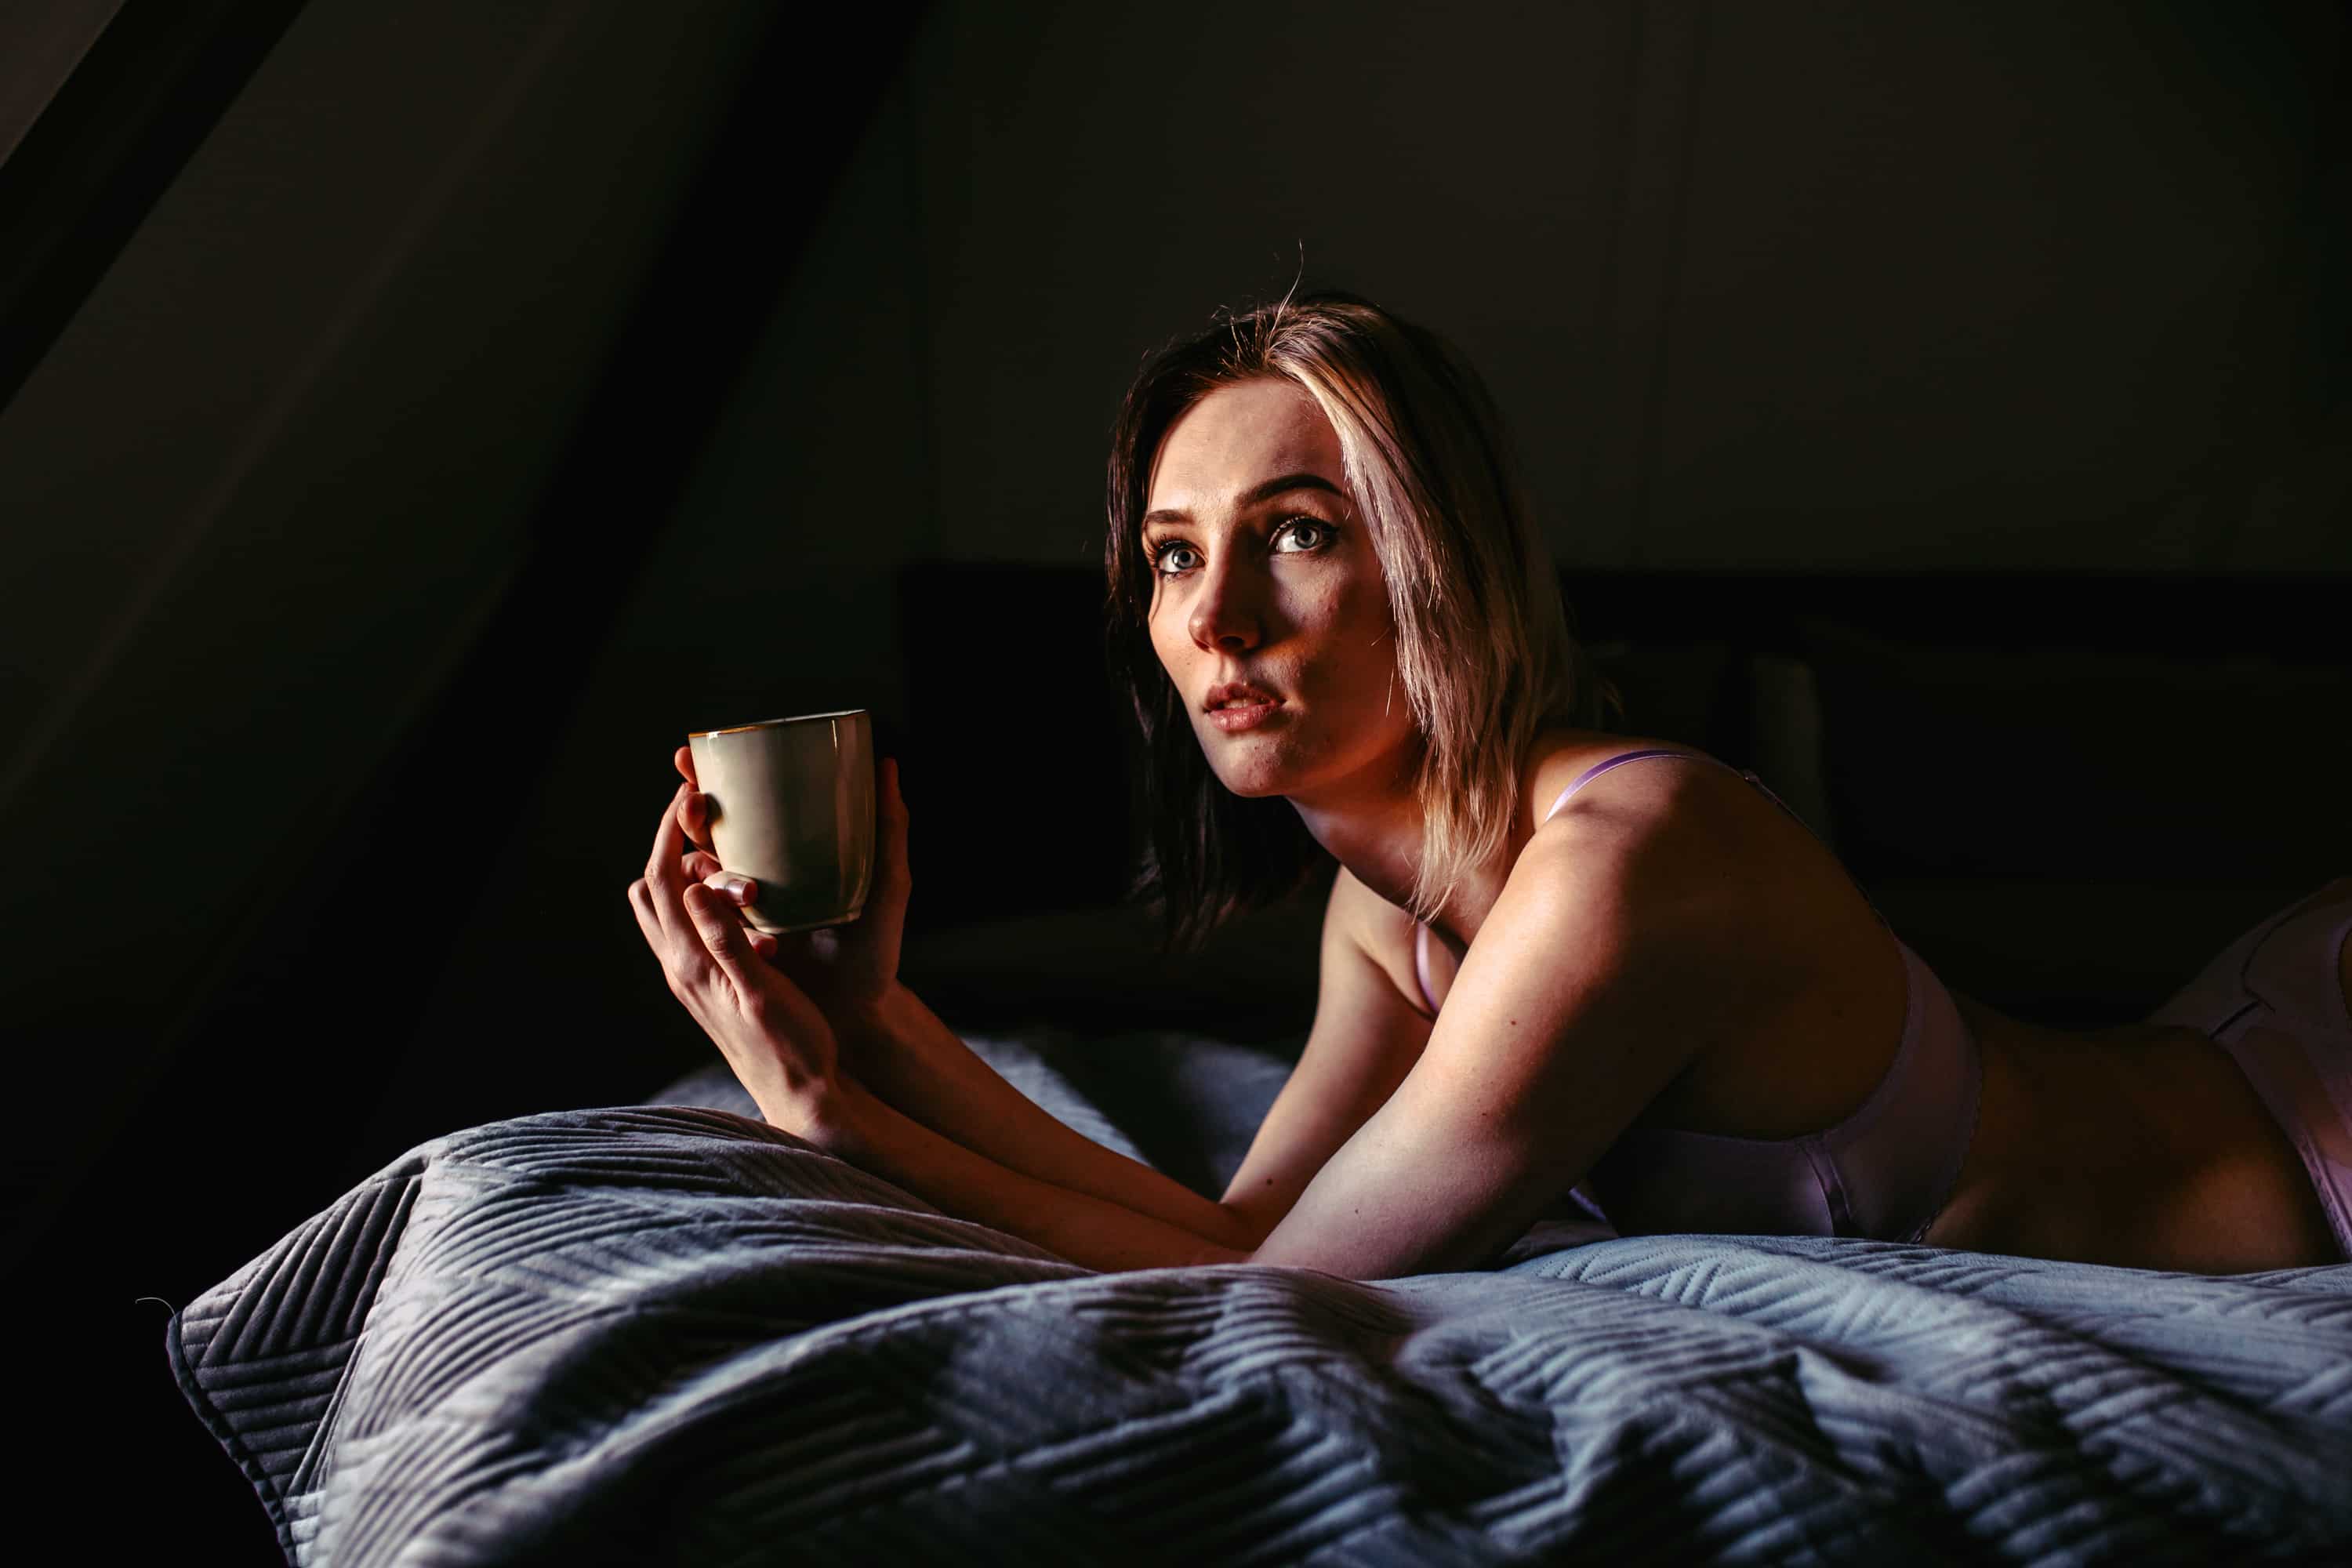 Een boudoirshoot van een vrouw in het Westland, terwijl ze ontspannen op bed ligt en zachtjes een kopje koffie wiegt.